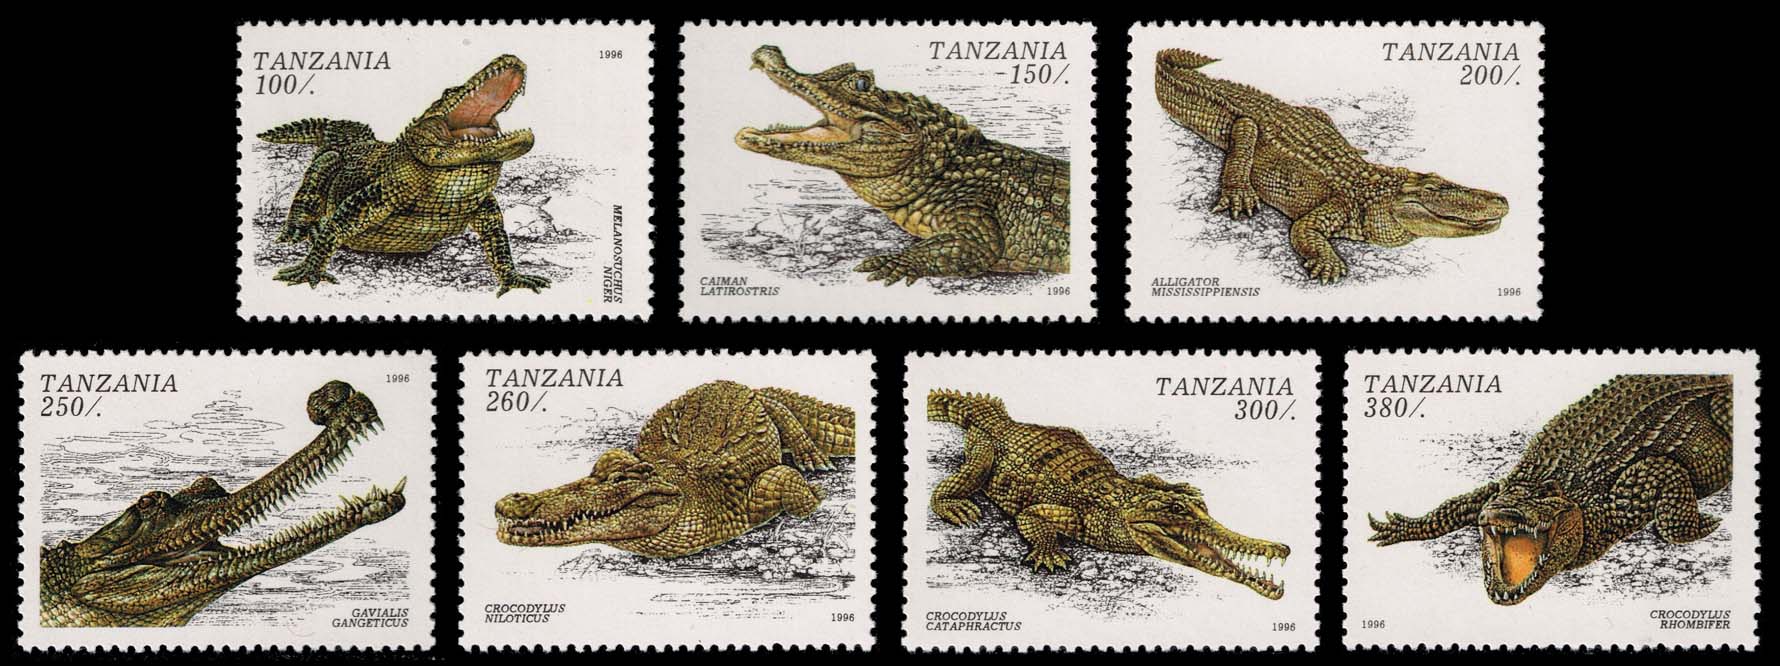 Tanzania #1463-1469 Crocodilians Set of 7; MNH